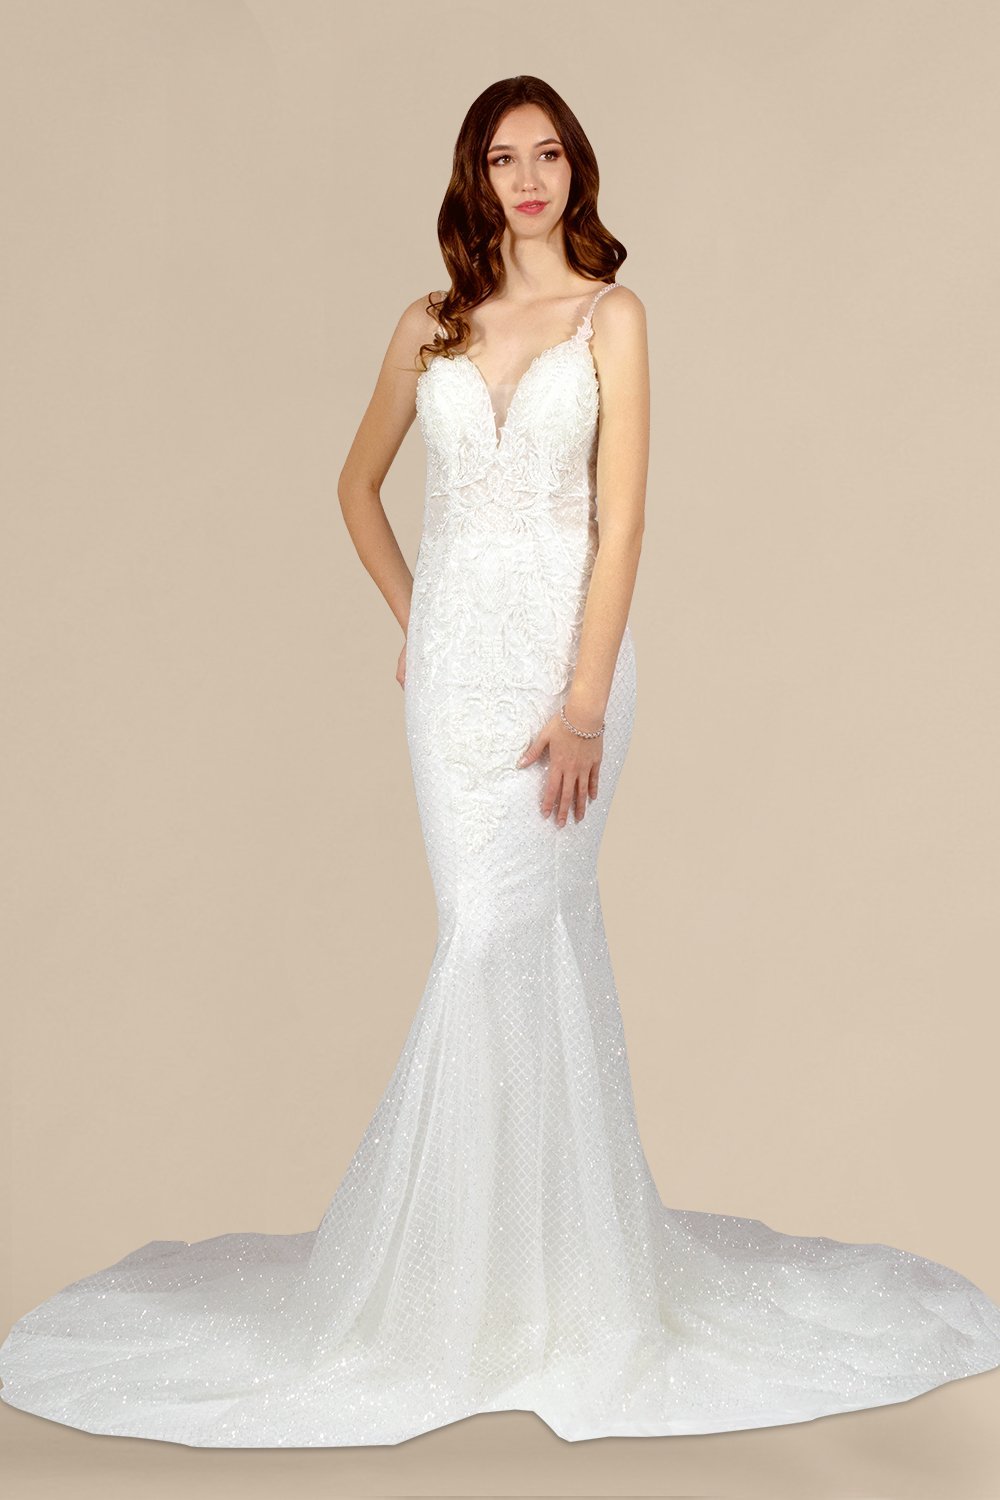 custom dressmaker australia online envious bridal formal glitter wedding dresses